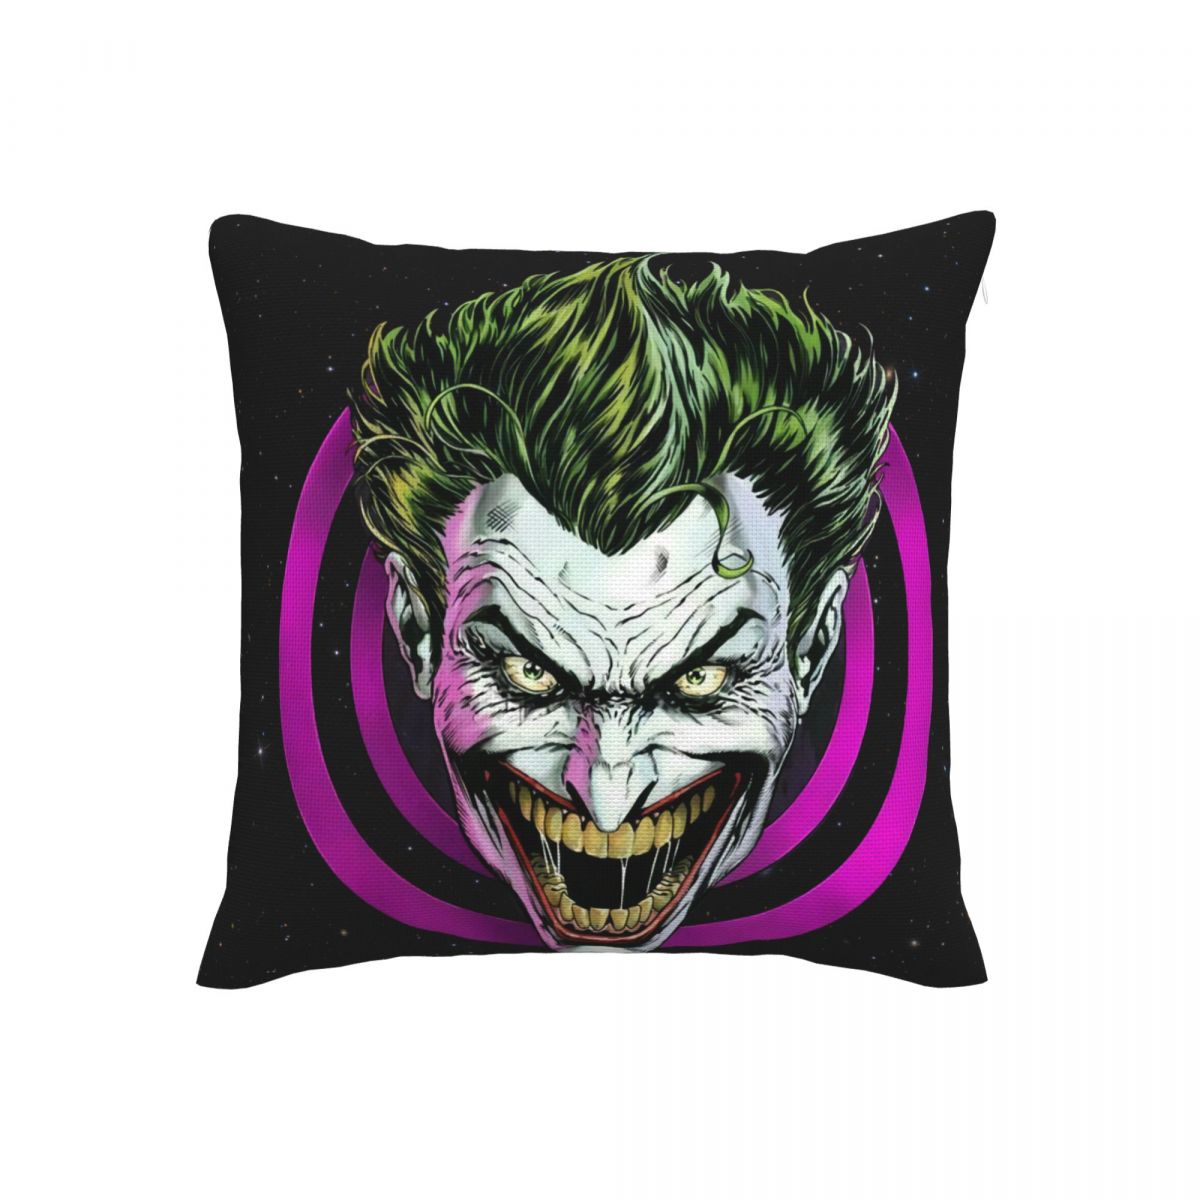 Joker Haha Face Pillow Case Covers